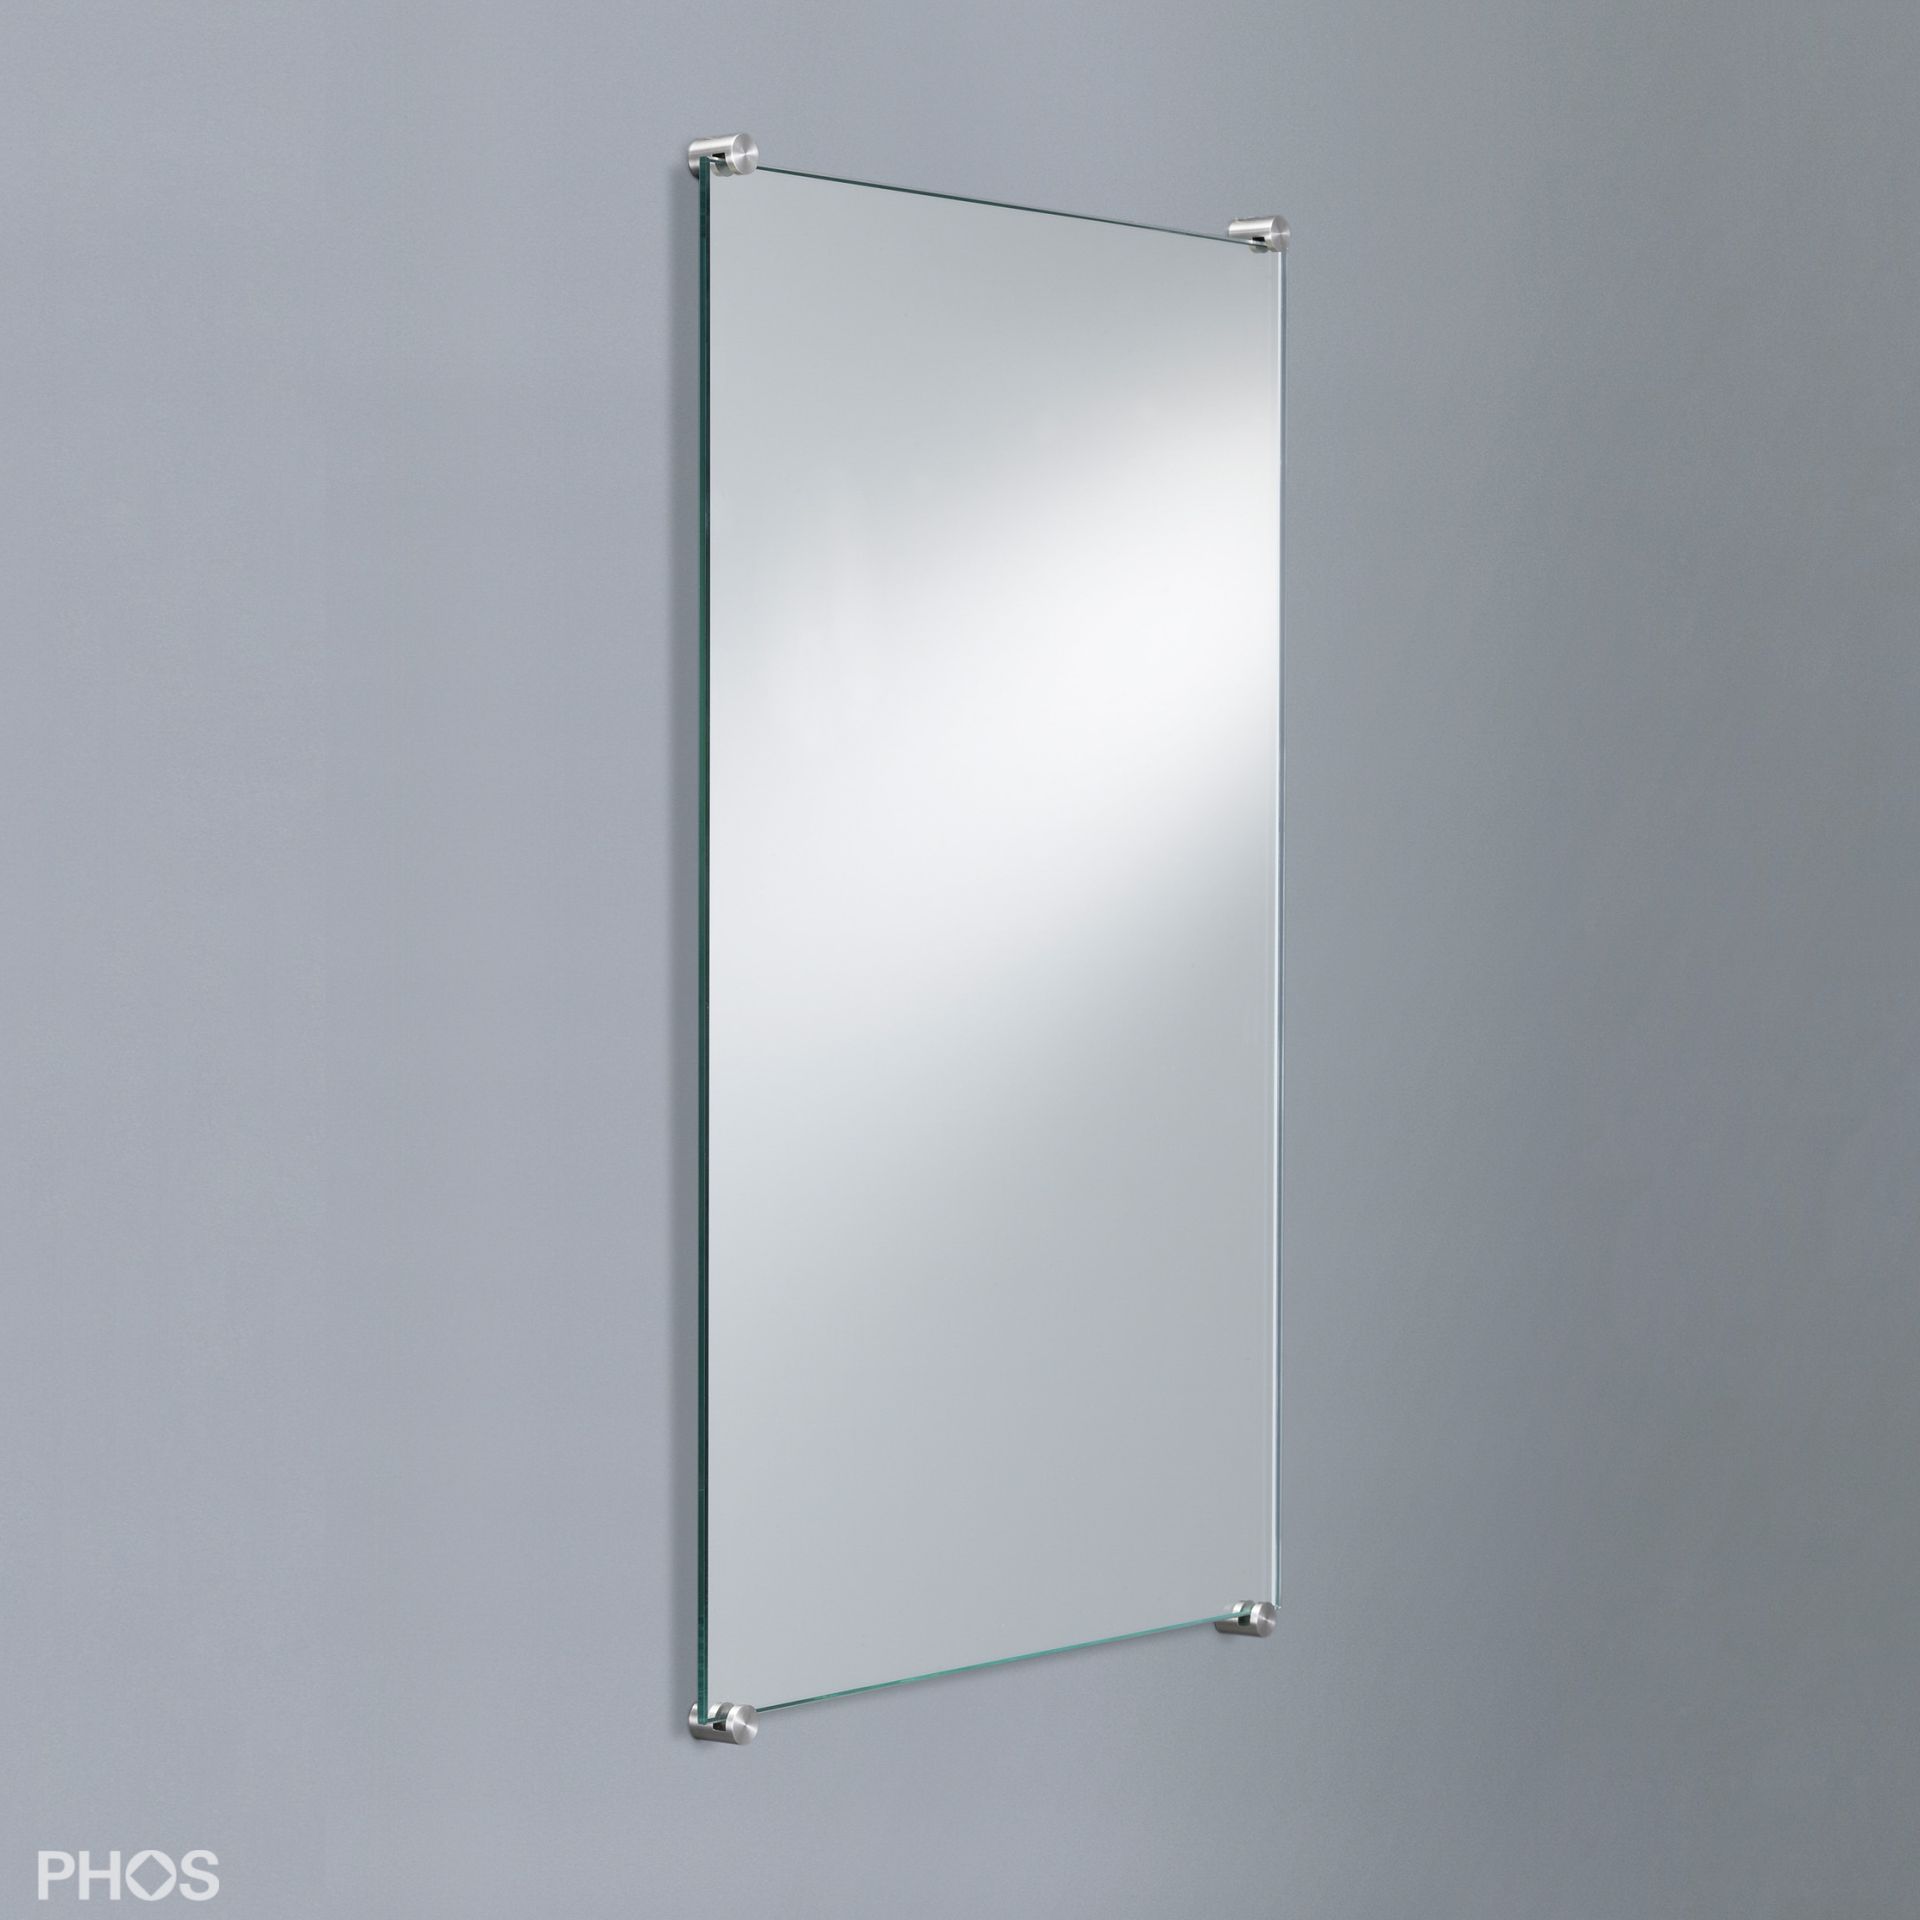 Edelstahl-Spiegelhalter Set für 4 mm Spiegel mit verdeckter Befestigung